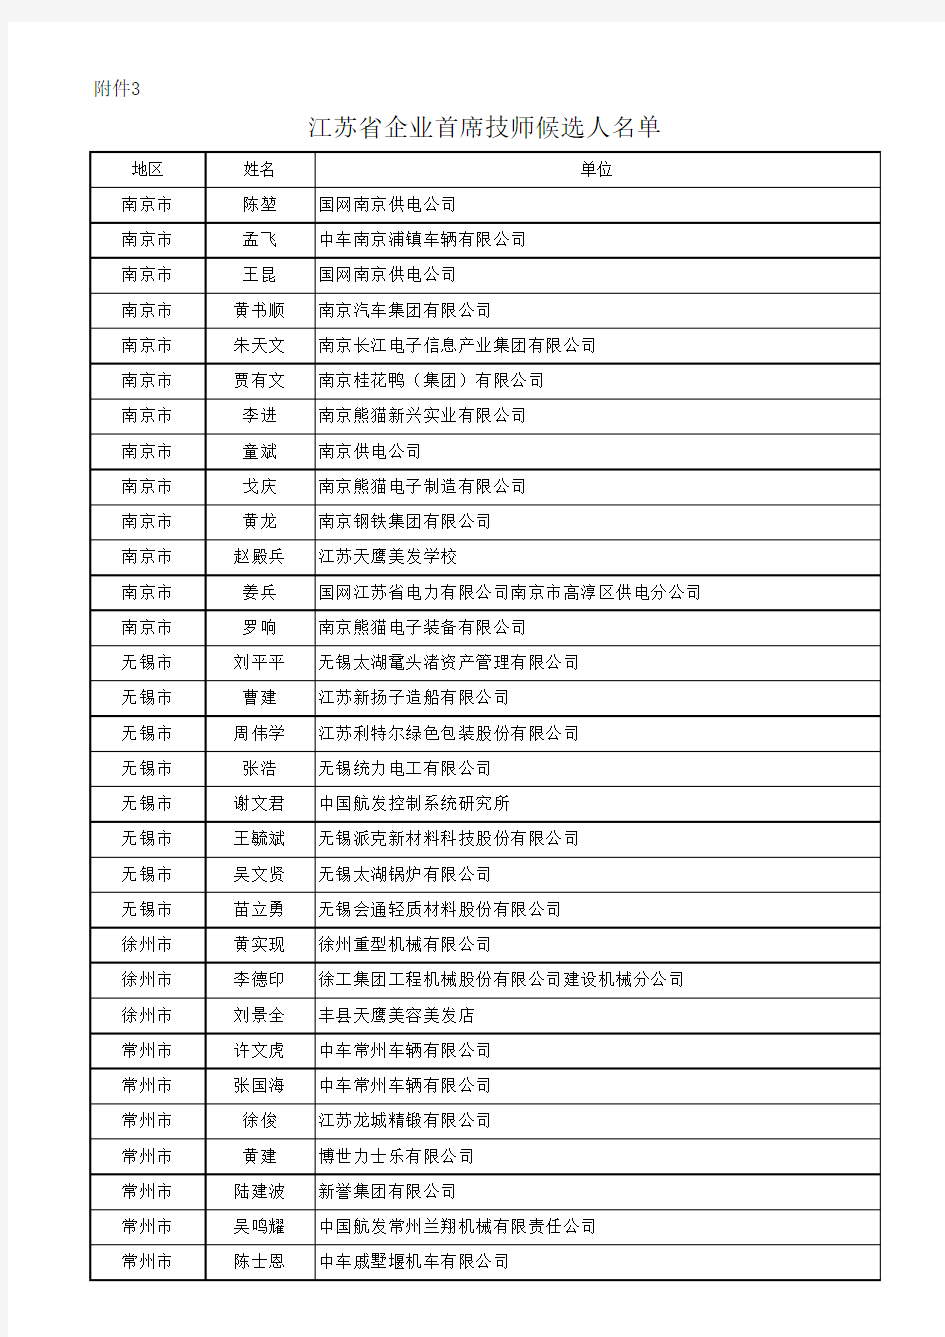 3.江苏省企业首席技师候选人名单